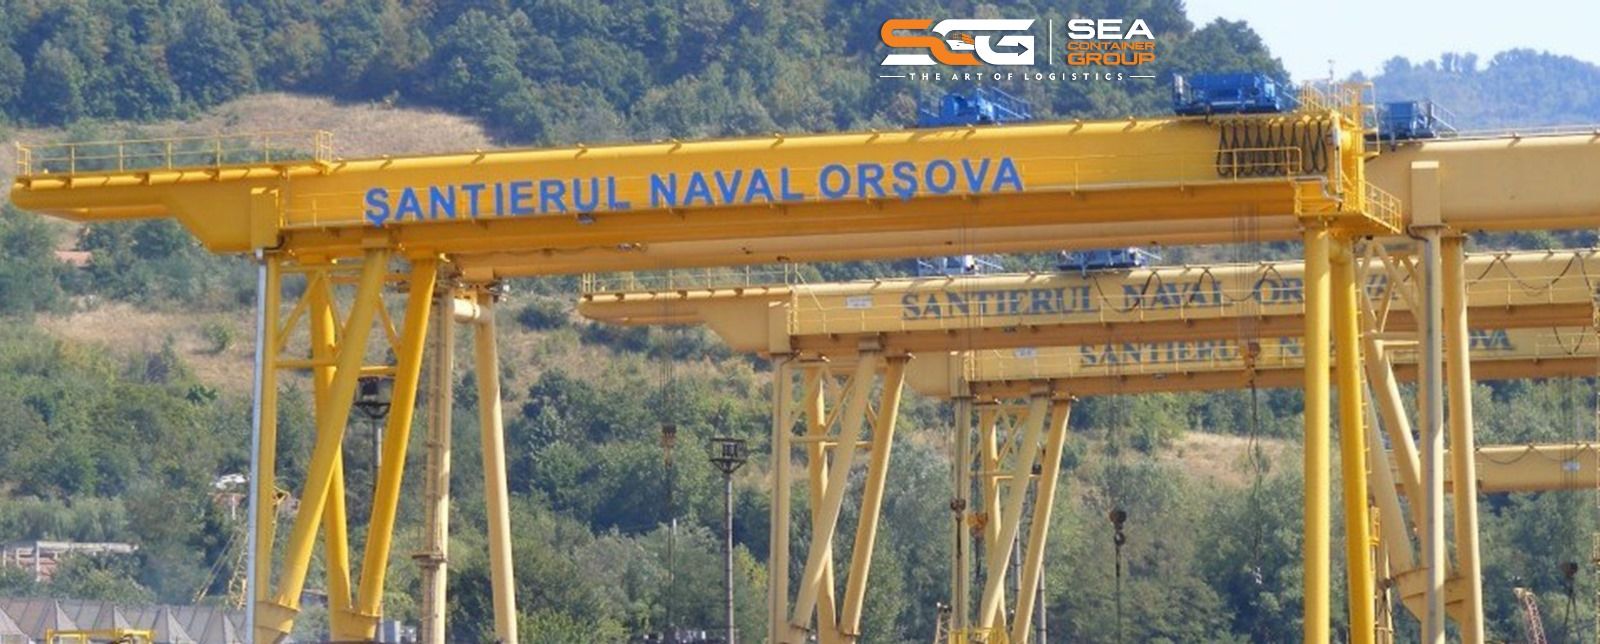 Sea Container Services a devenit actionar principal la Santierul Naval Orsova